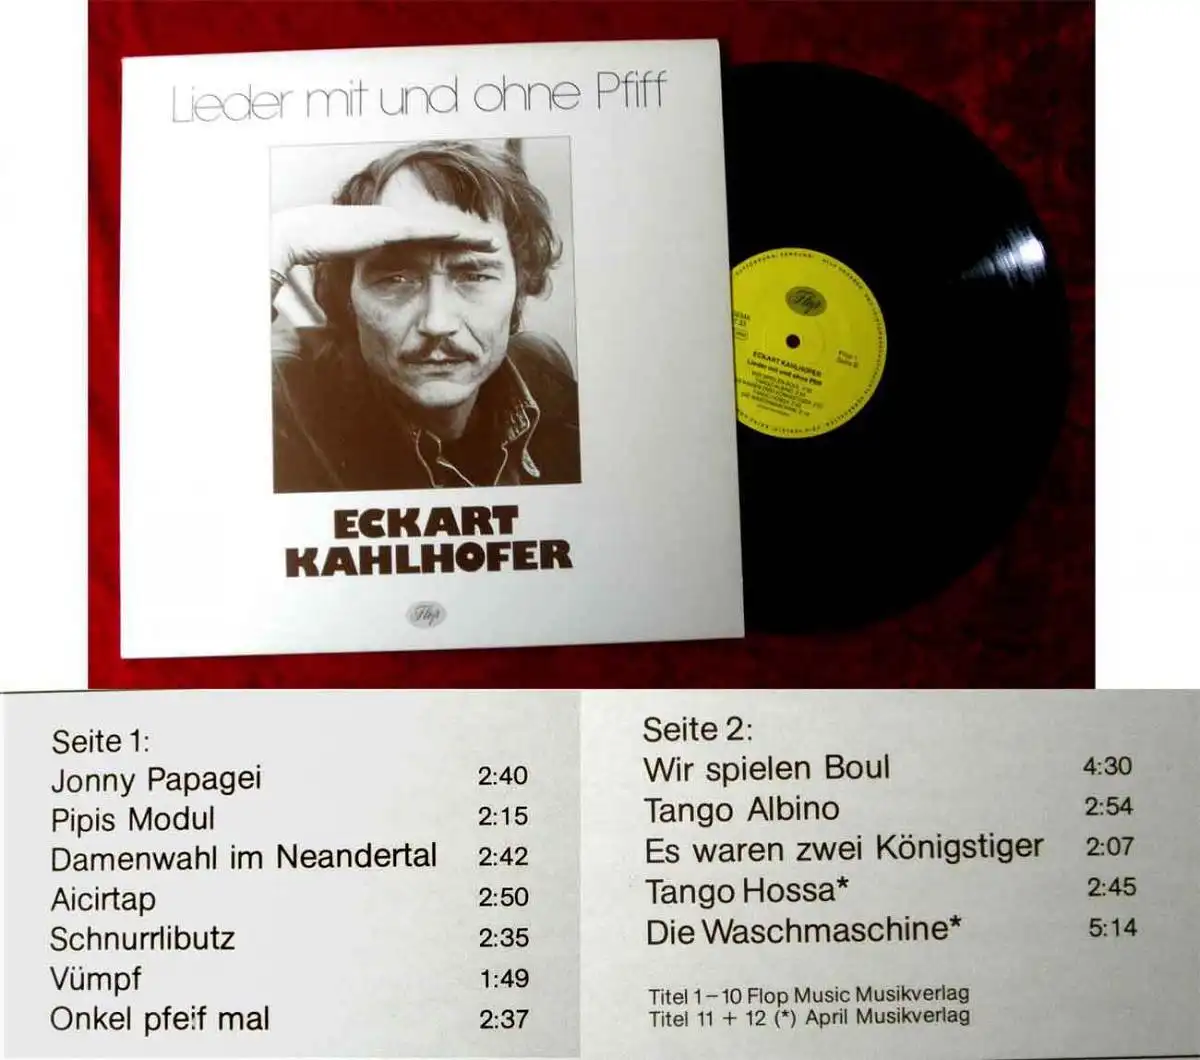 LP Eckart Kahlhofer: Lieder mit und ohne Pfiff (Flop 1) D 1978